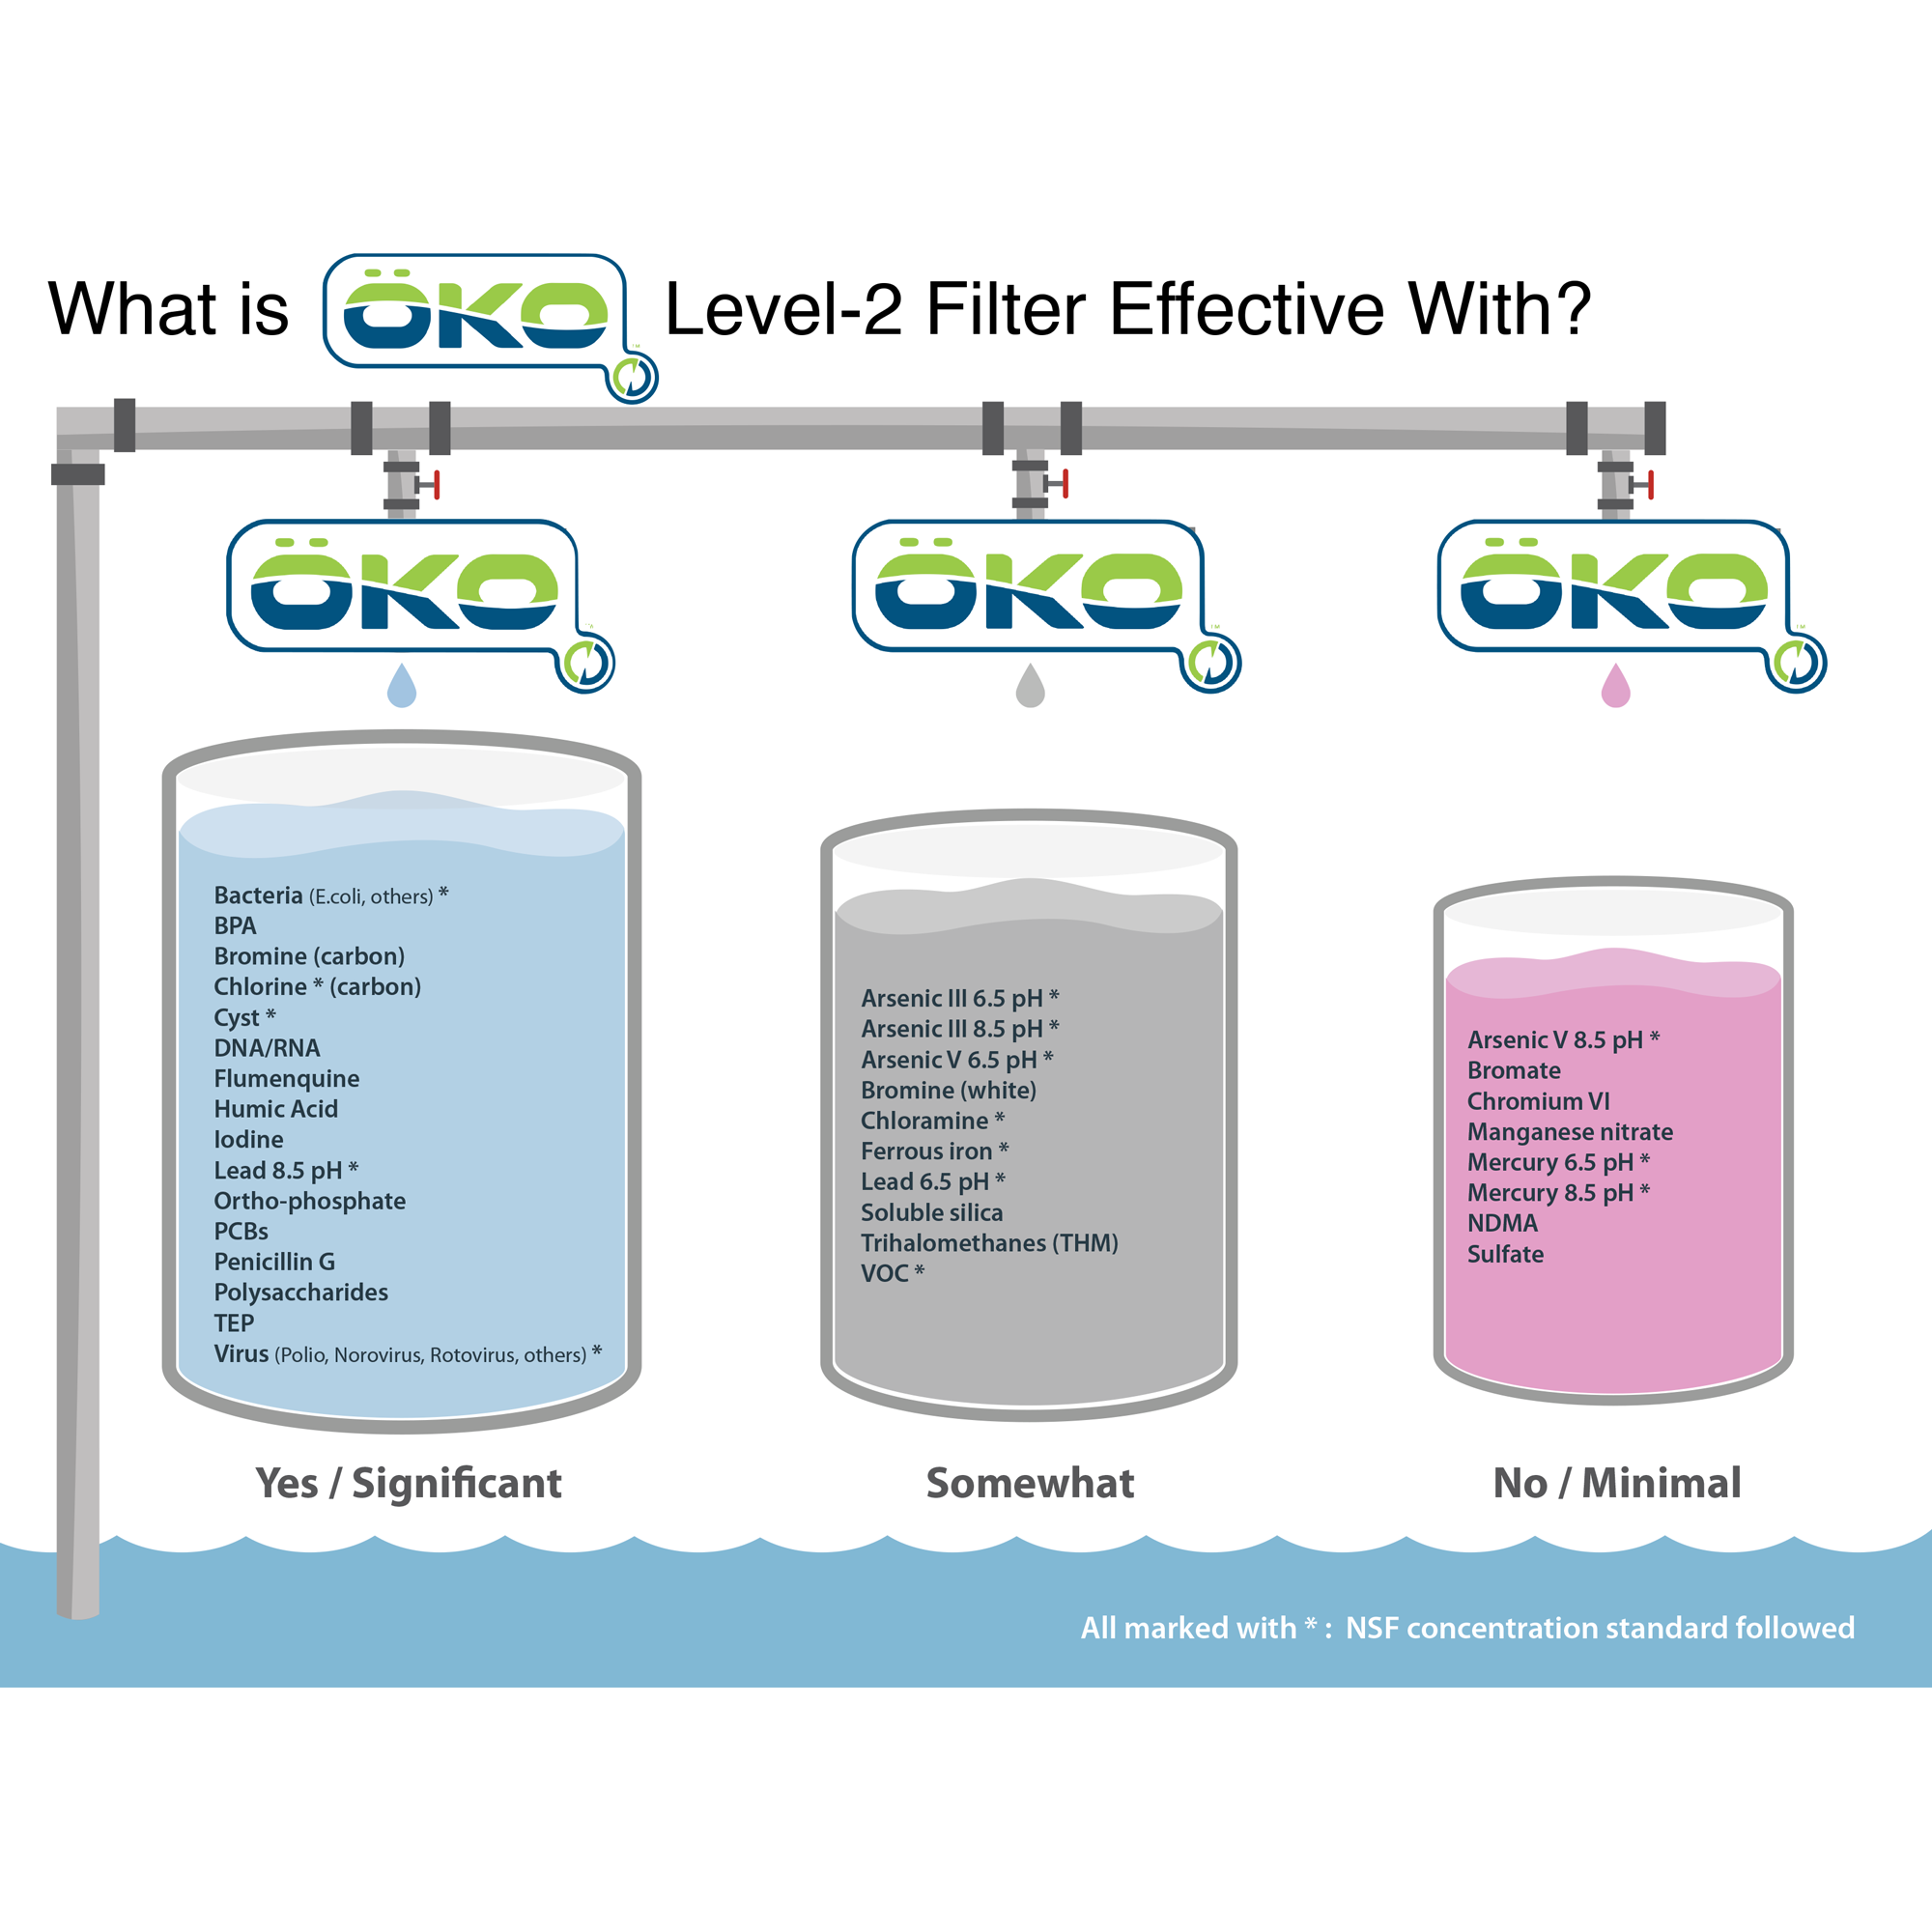 OKO Level 2 Filter